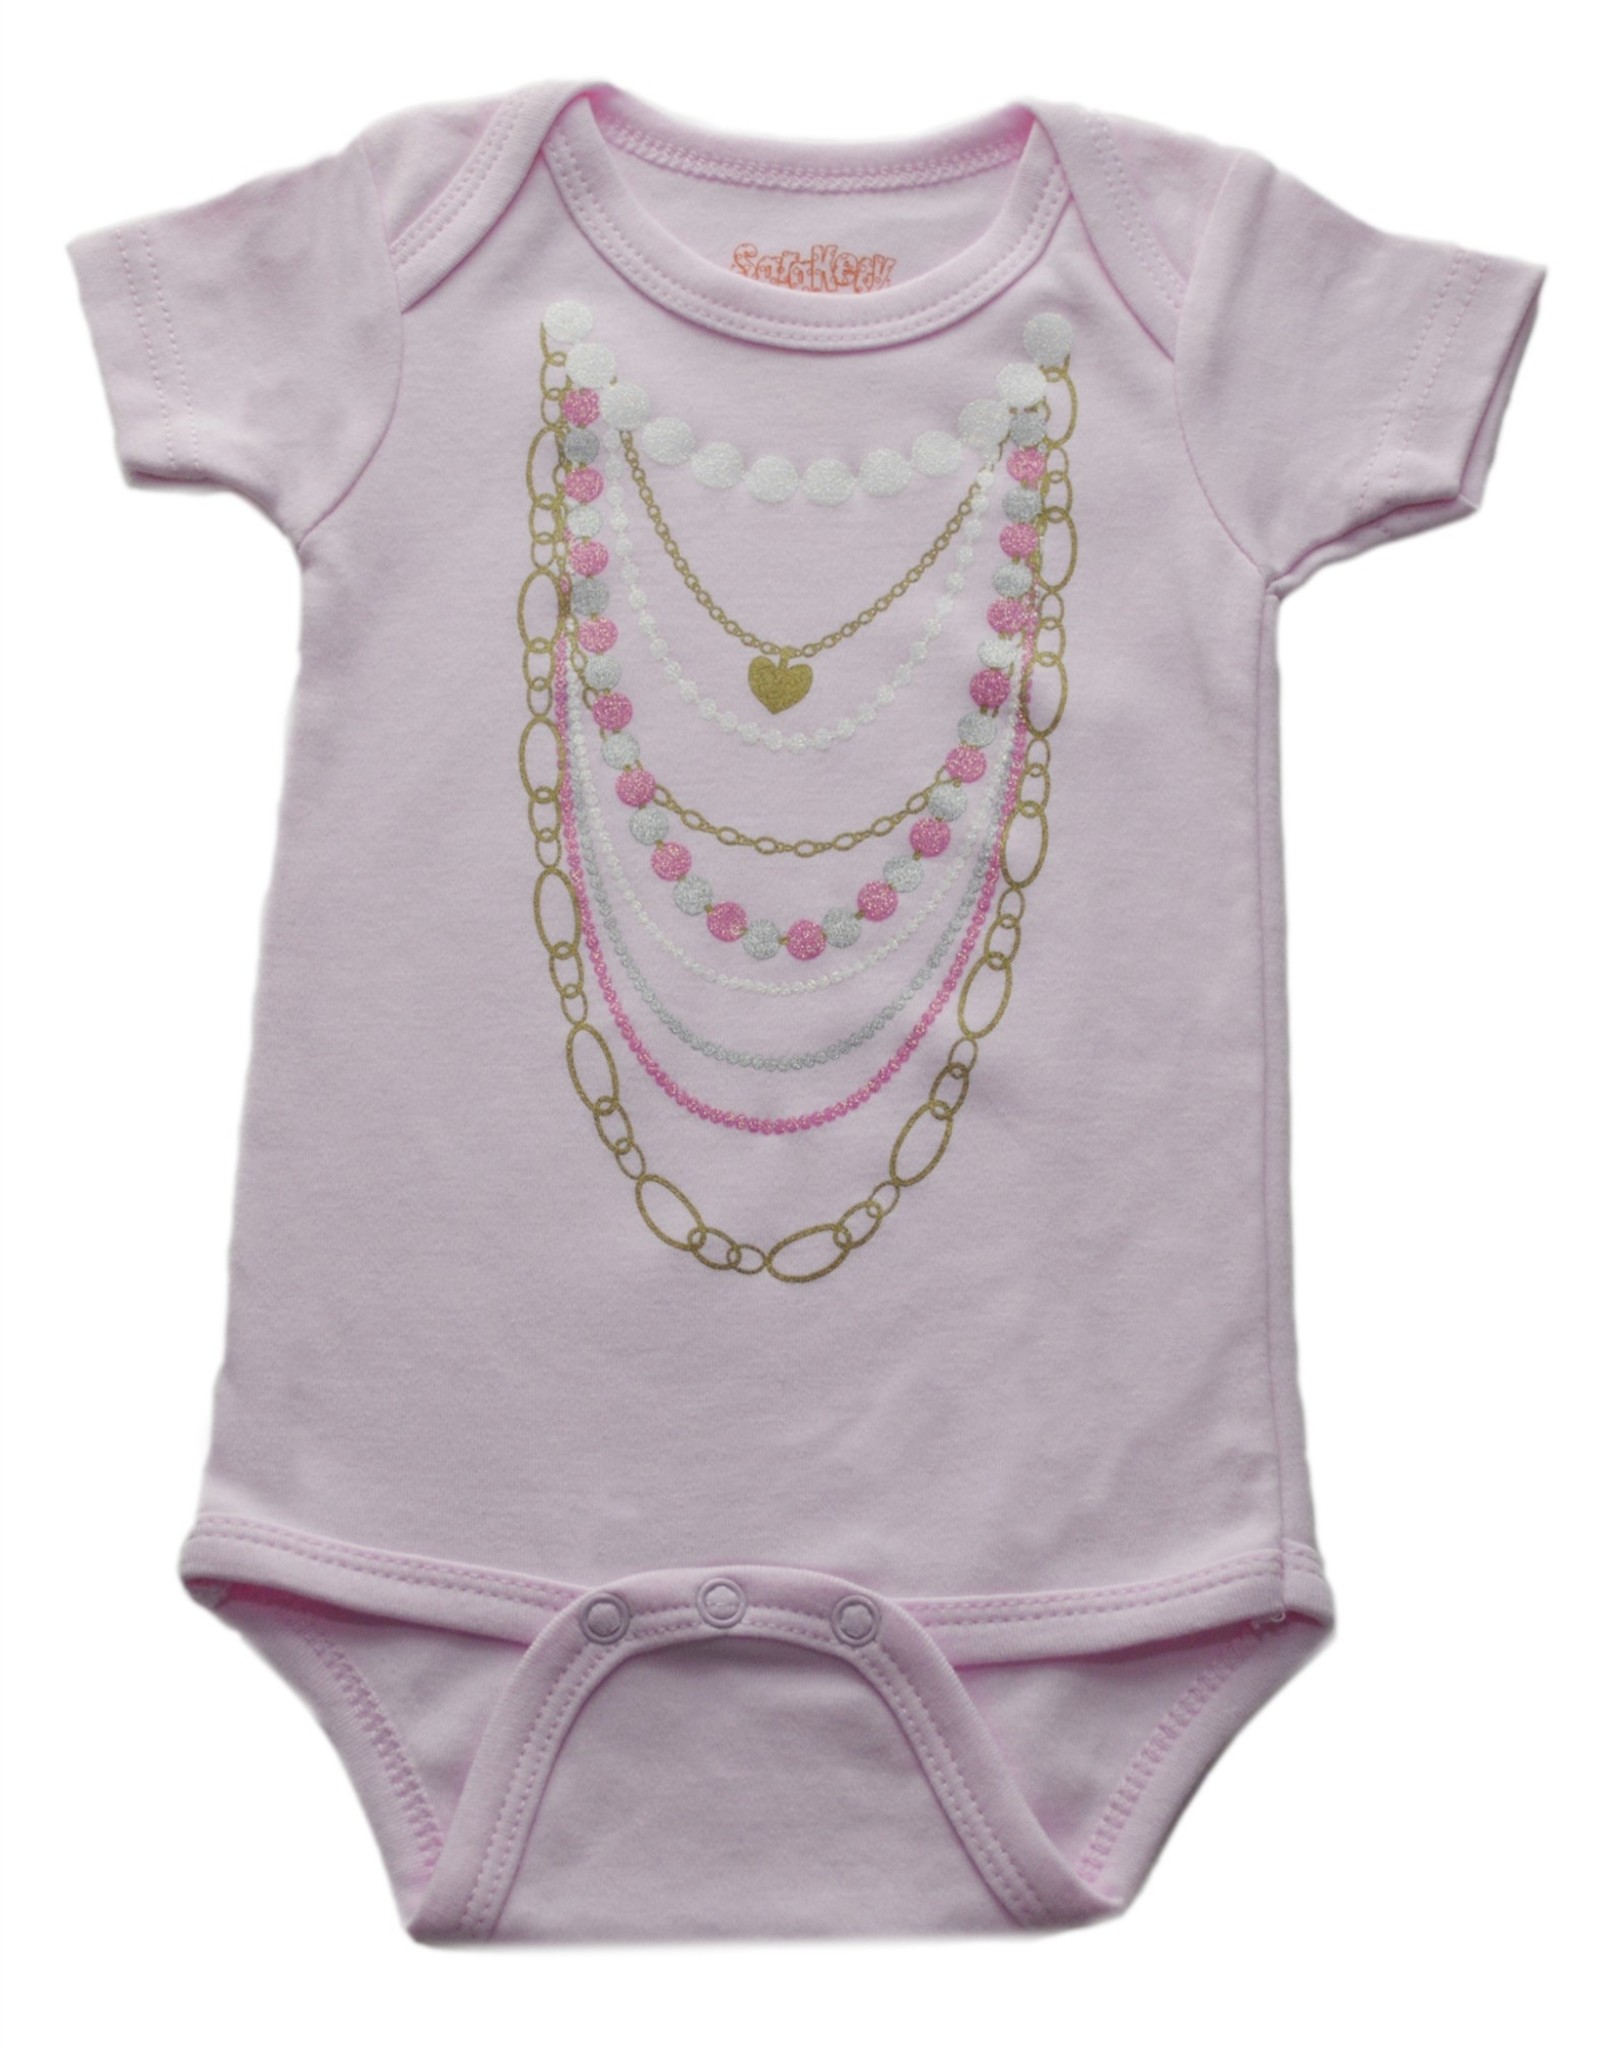 Sara Kety Onesie Pink Necklaces 12-18 Months Pink